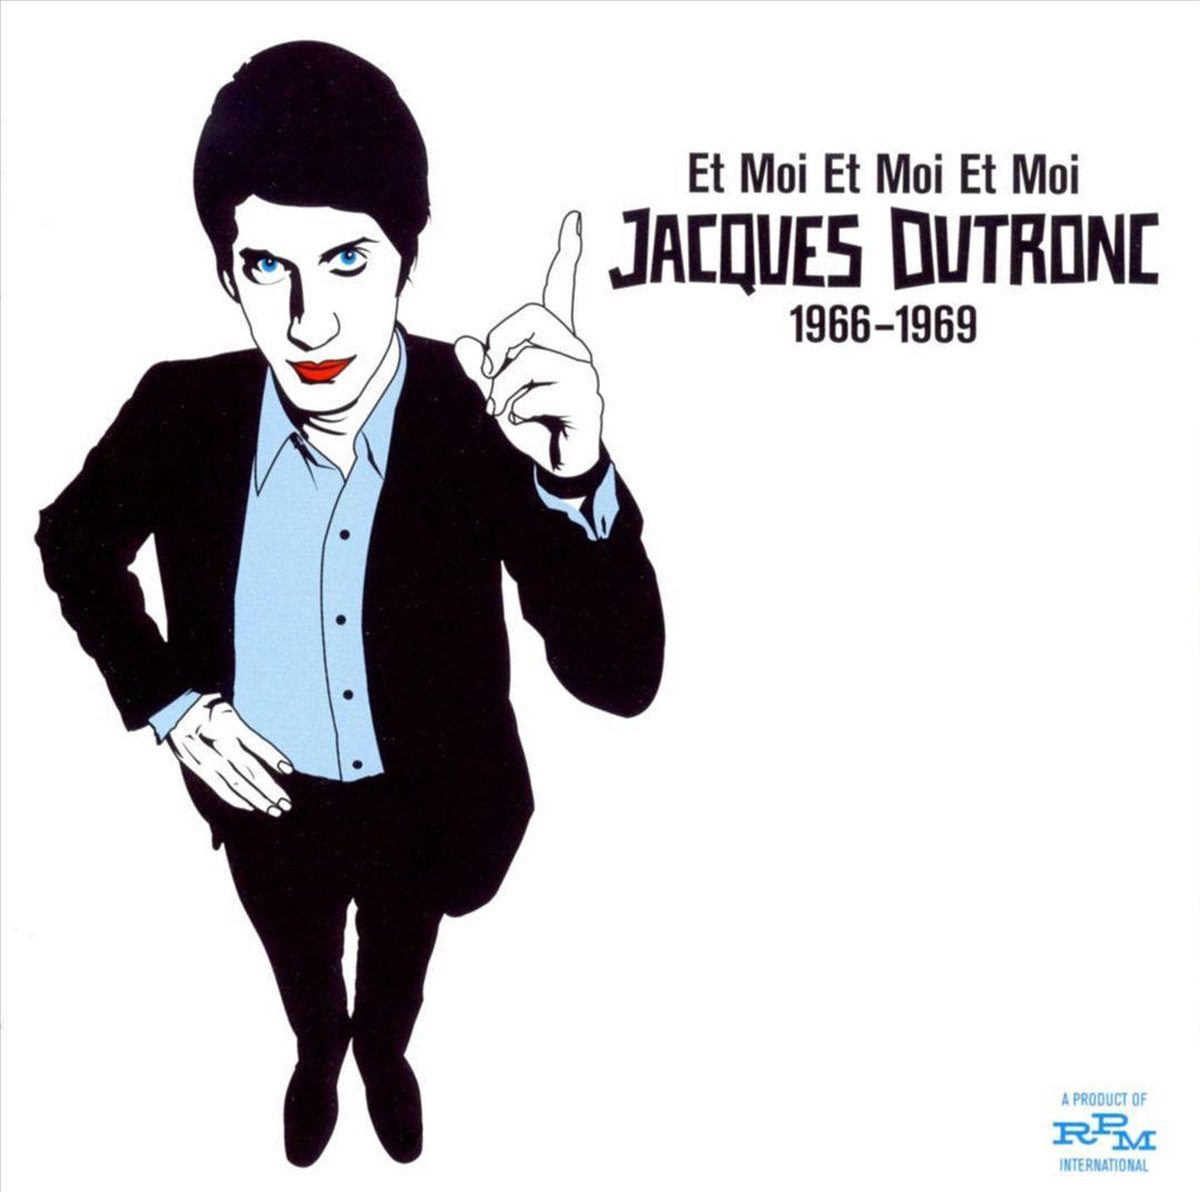 Et moi, et moi, et moi»: Jacques Dutronc, modèle de haute désinvolture